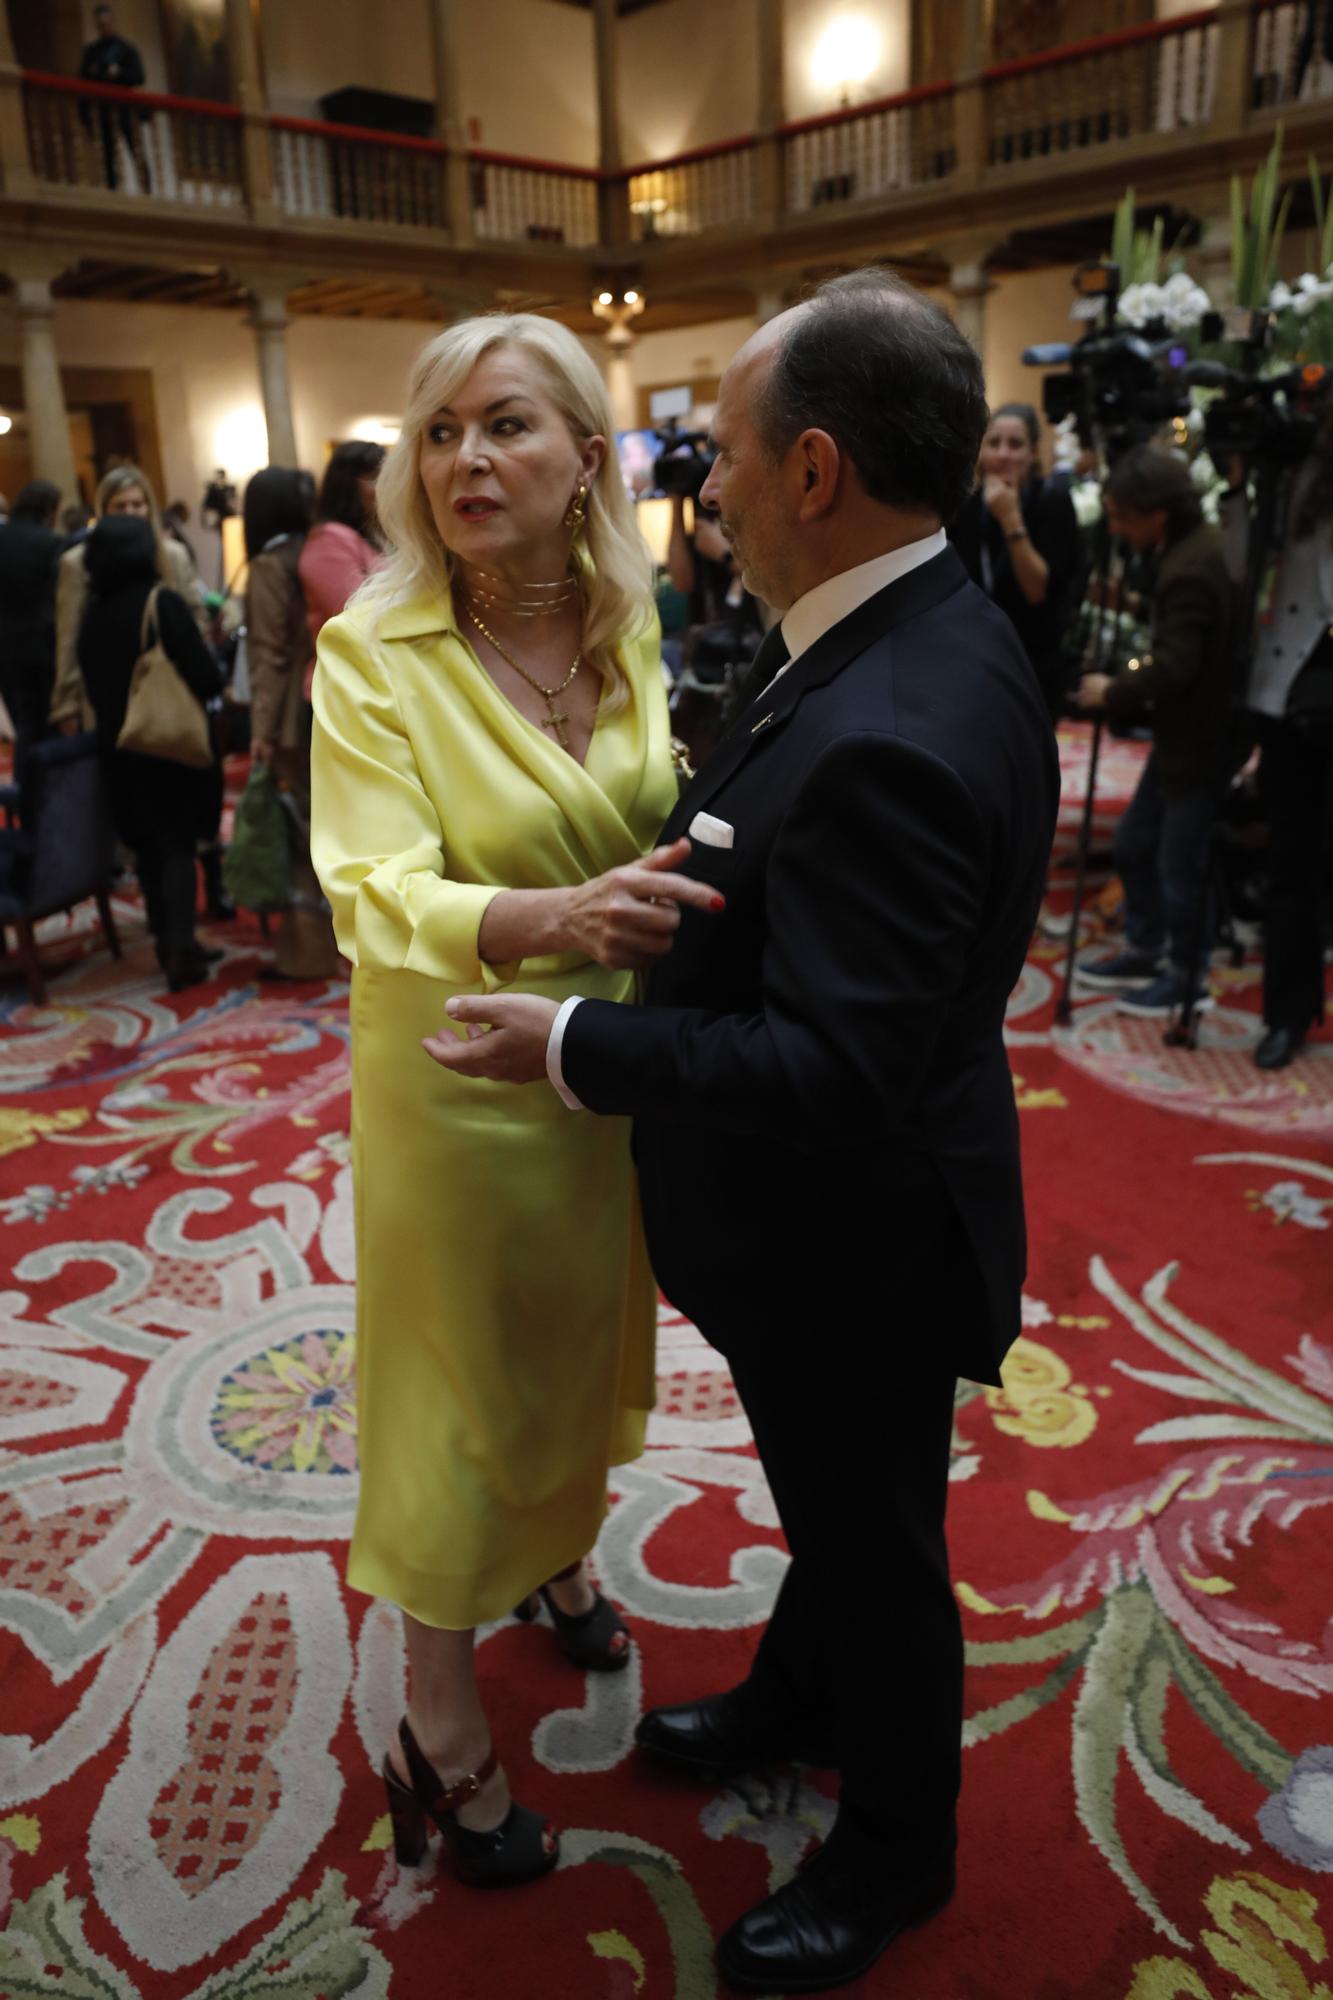 EN IMÁGENES: Personalidades y premiados se dan cita en el hotel de la Reconquista antes de la ceremonia de los premios "Princesa de Asturias"